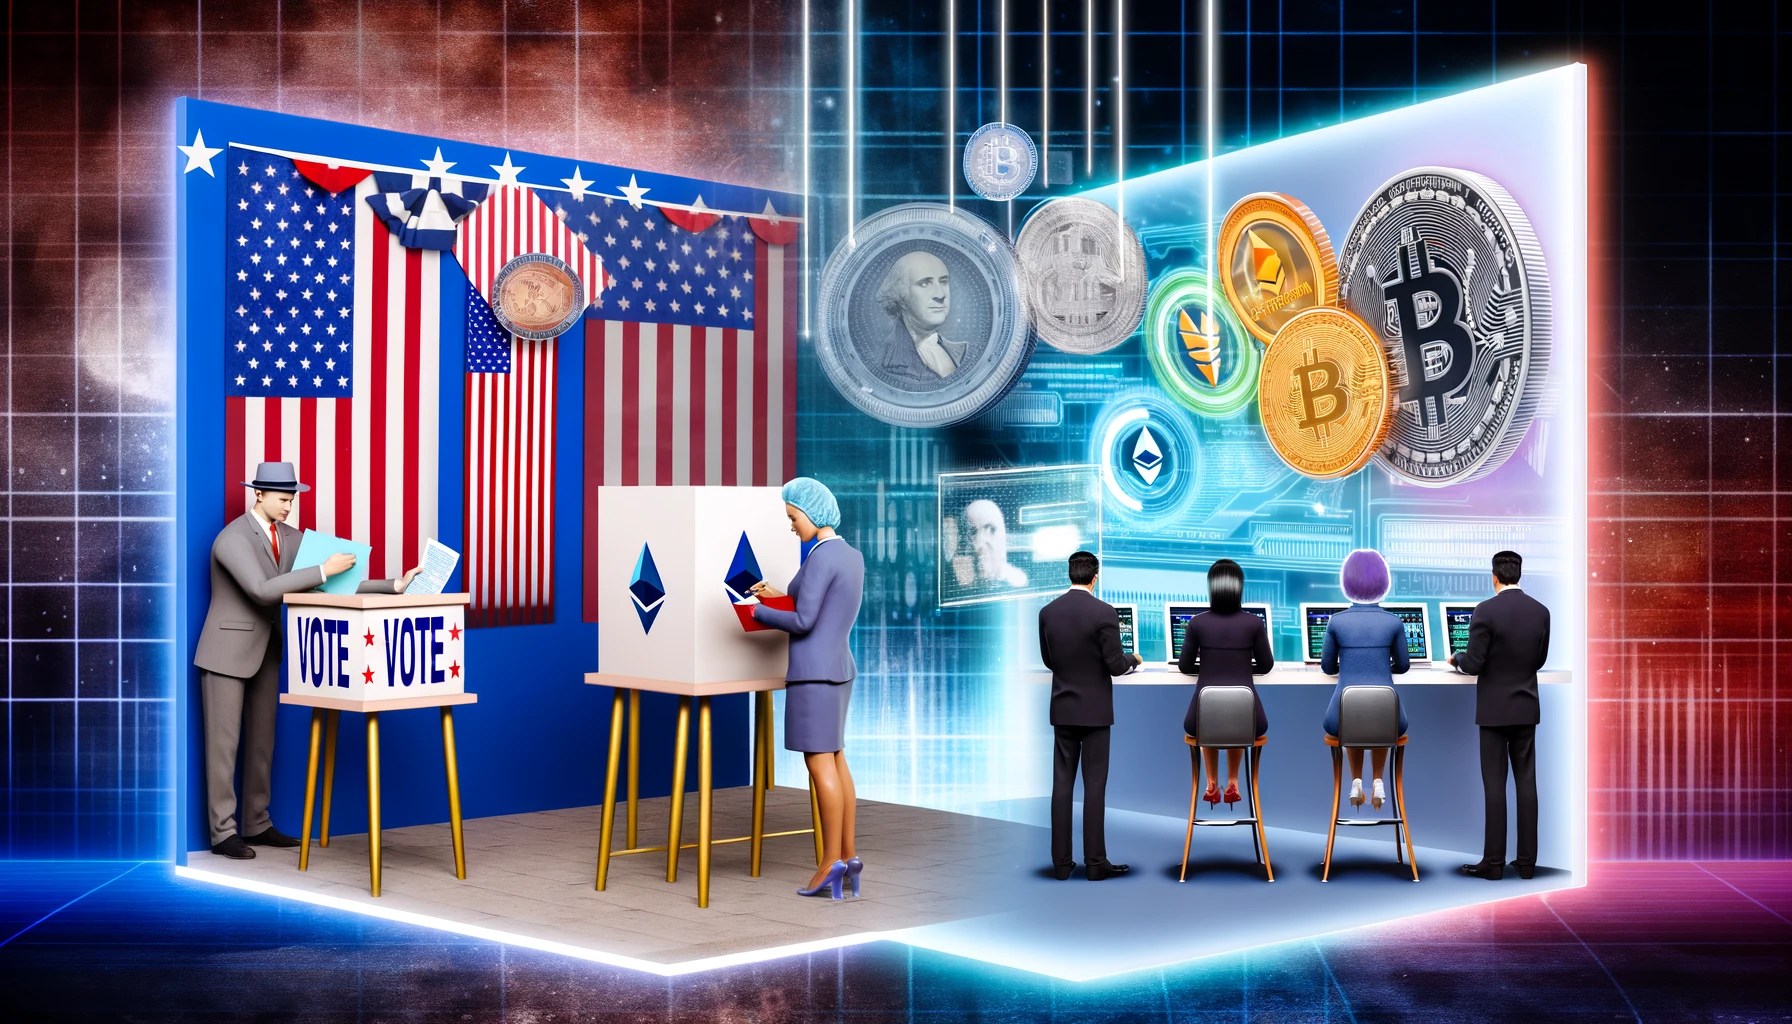 Le fondateur de Cardano révèle ce qui décidera du vainqueur des élections présidentielles américaines - La Crypto Monnaie